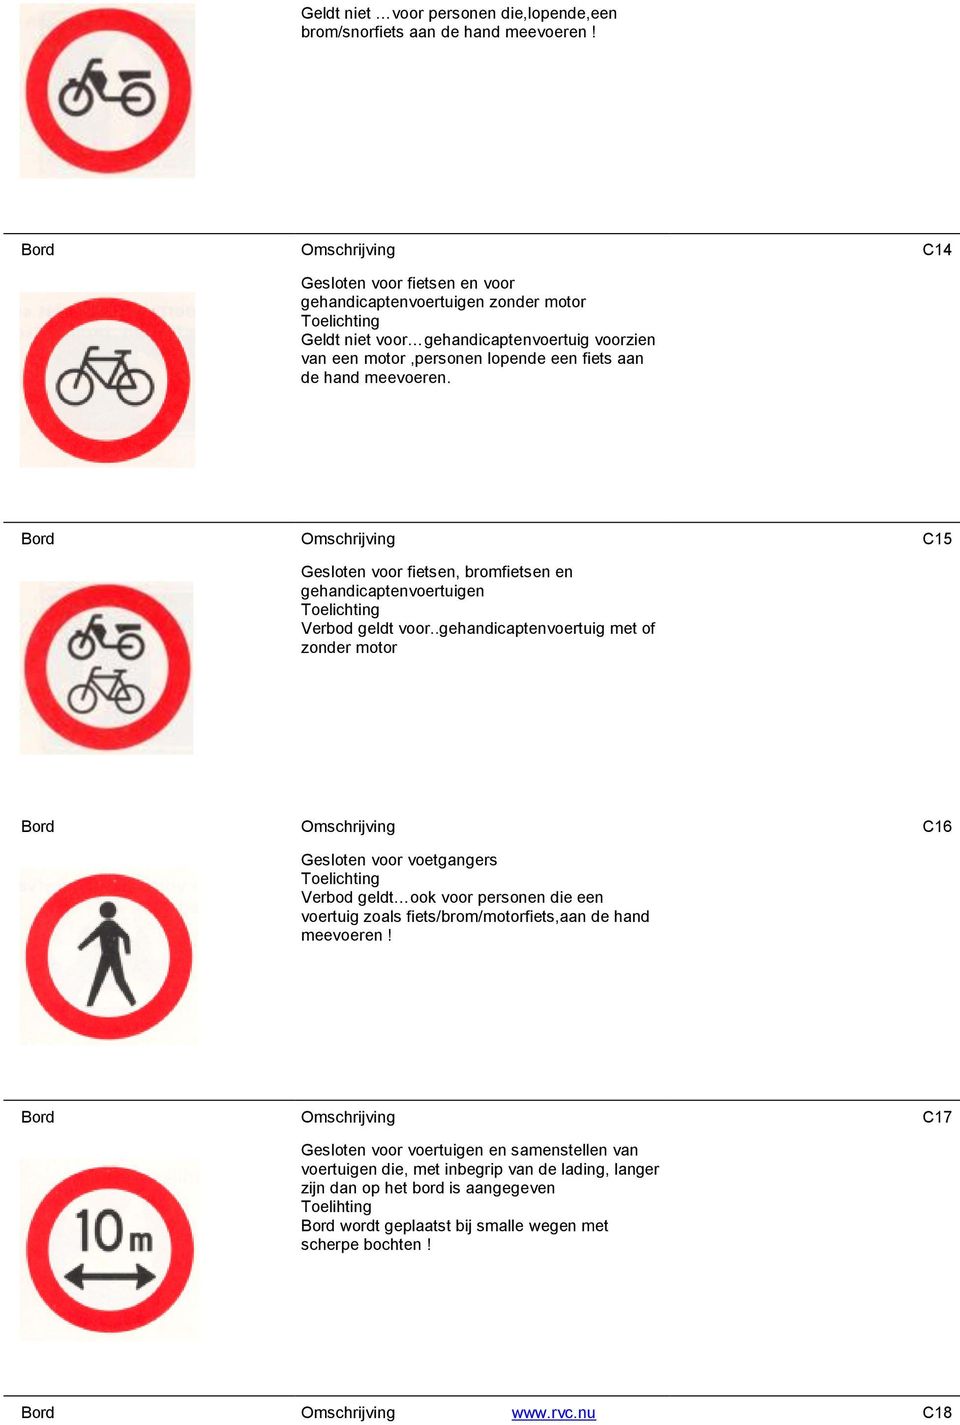 Bord Omschrijving C15 Gesloten voor fietsen, bromfietsen en gehandicaptenvoertuigen Verbod geldt voor.